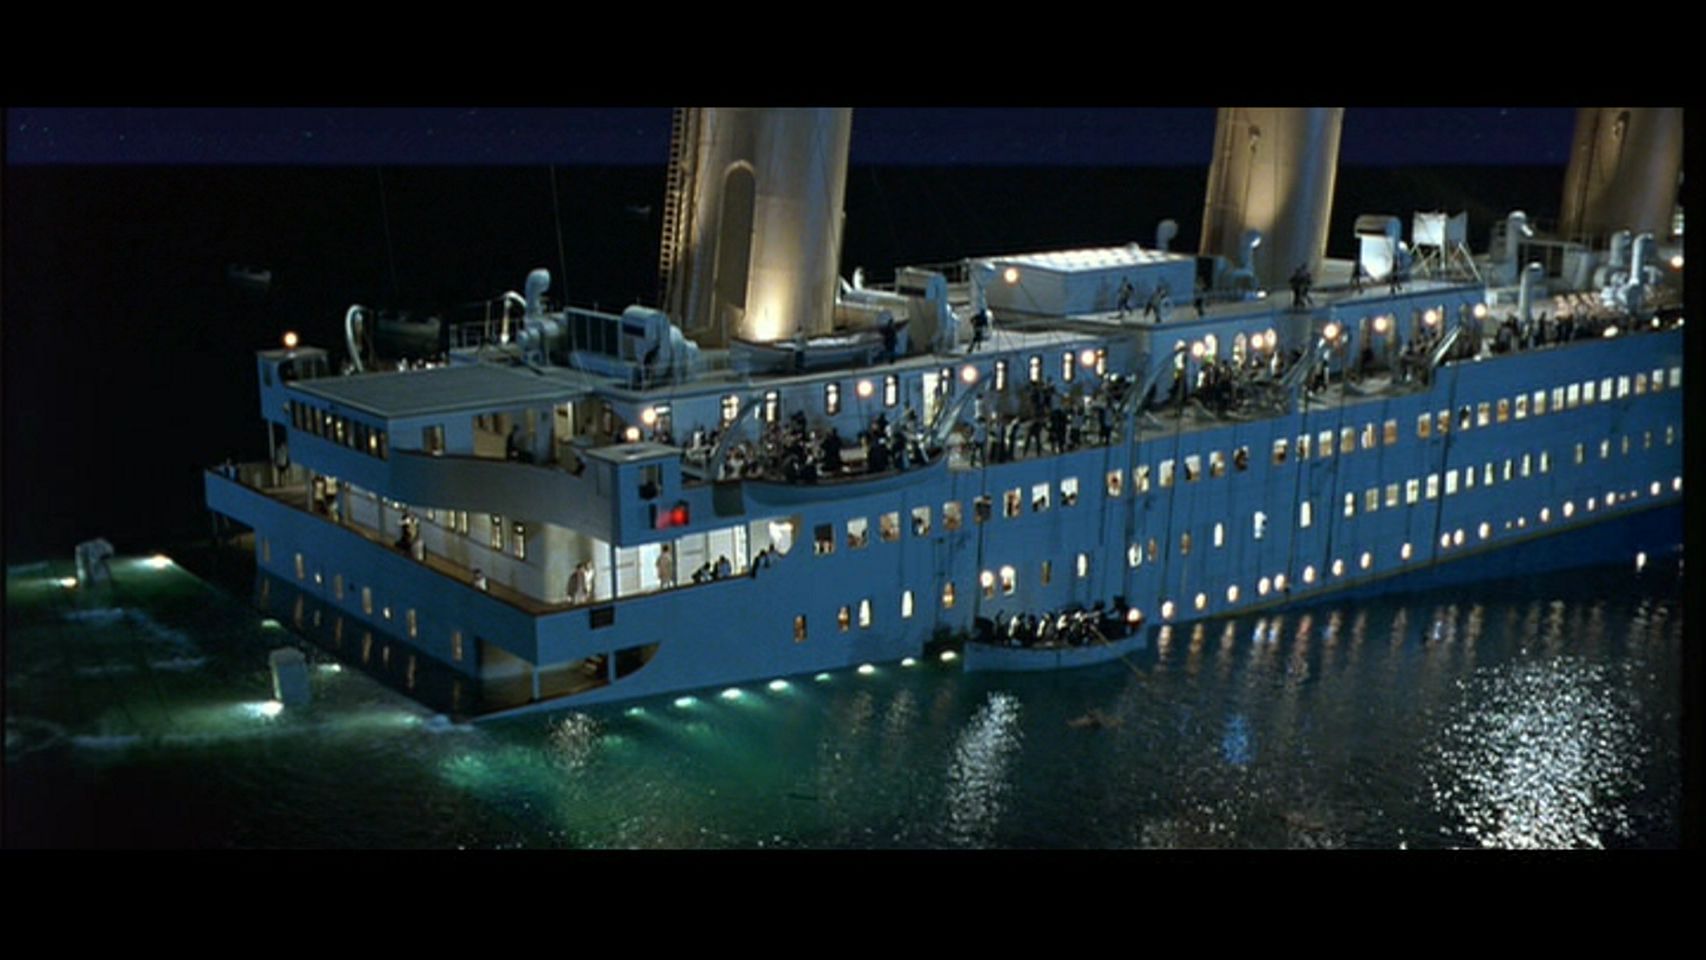 Titanic [1997] - Titanic Image (22287252) - Fanpop